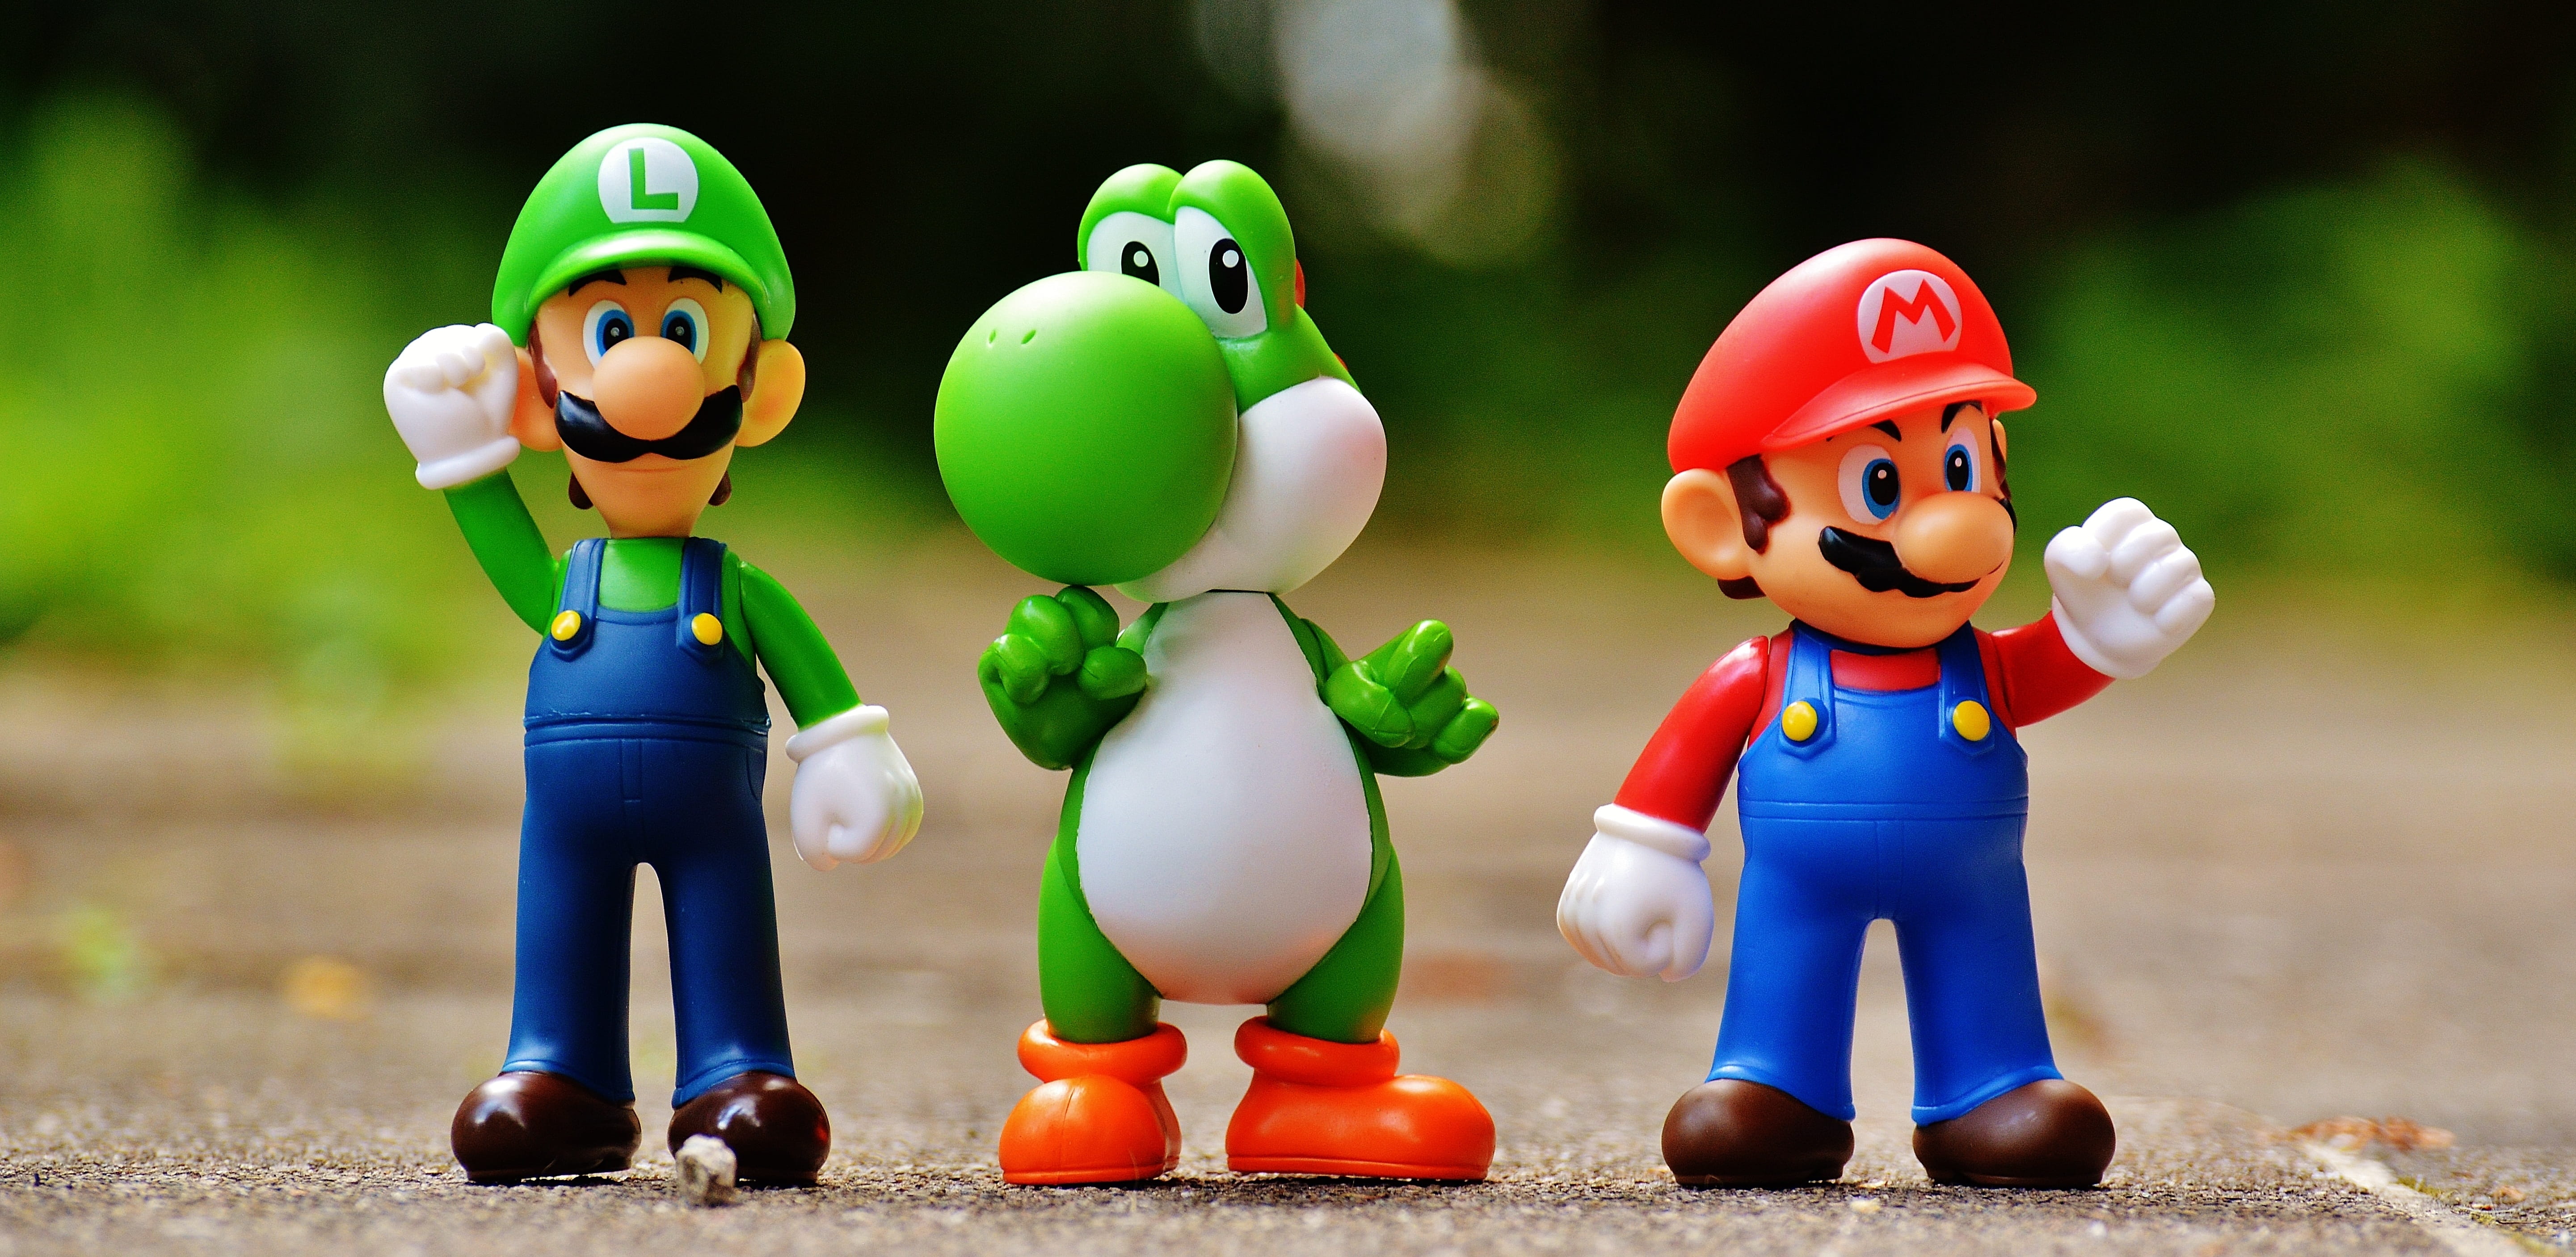 Focus Photo of Super Mario, Luigi, and Yoshi Figurines, action figures